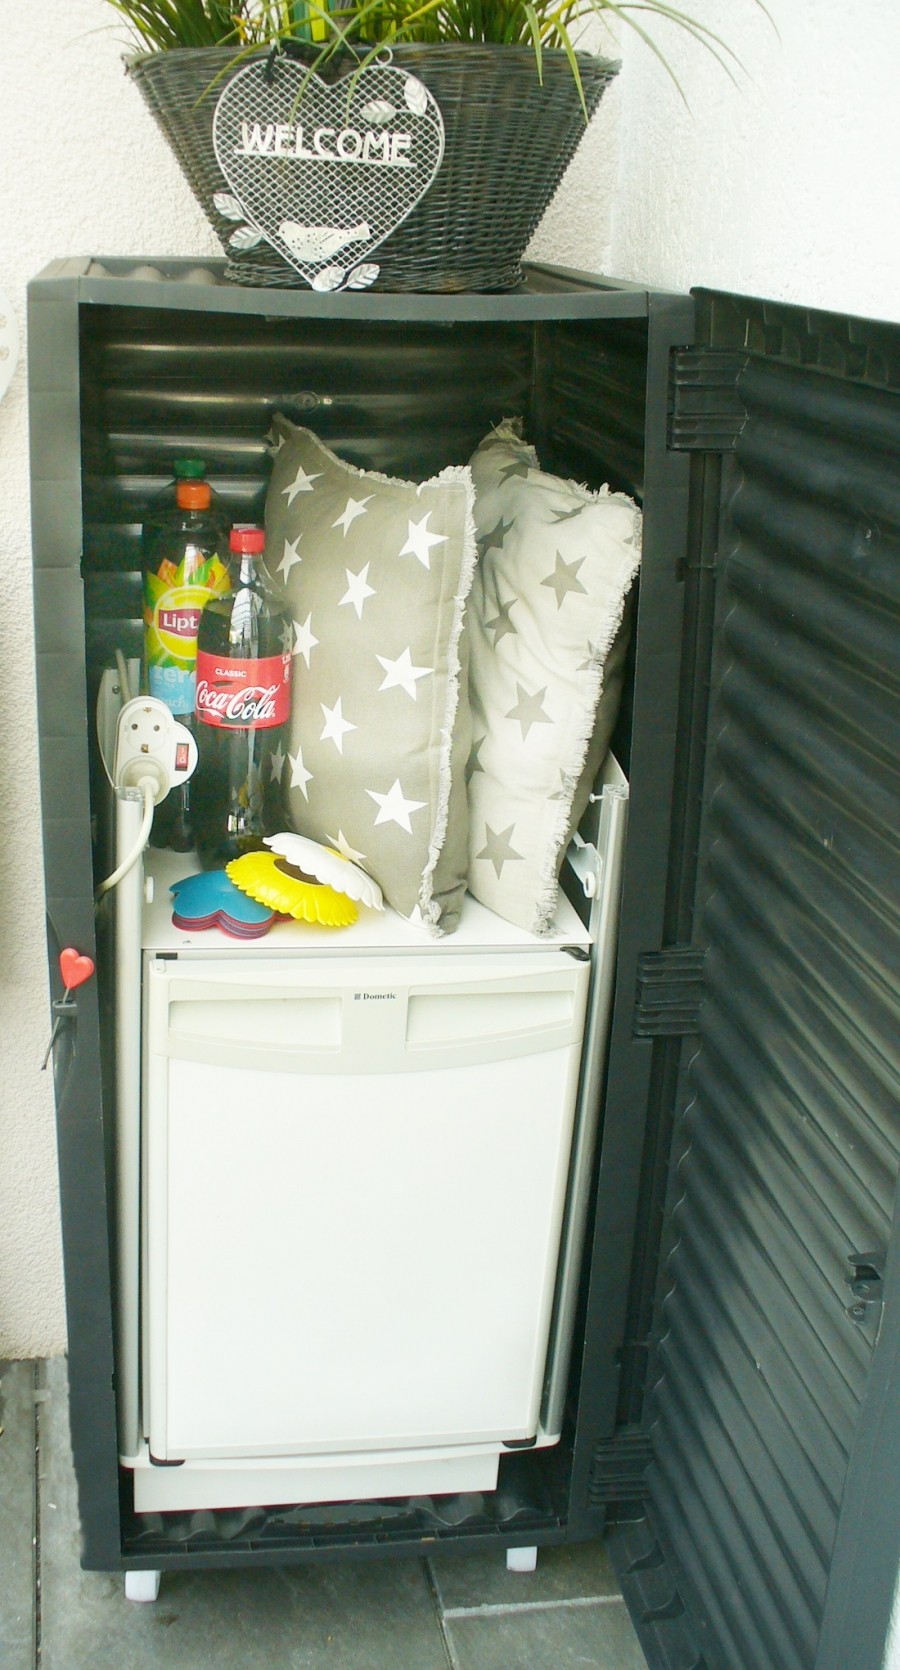 Ich kam auf die Idee, den Kühlschrank in die aufrecht stehende Box zu stellen.  Da noch reichlich Luft nach oben vorhanden war, fanden auch ein kleiner Getränkevorrat sowie andere diverse Dinge dort ausreichend Platz.